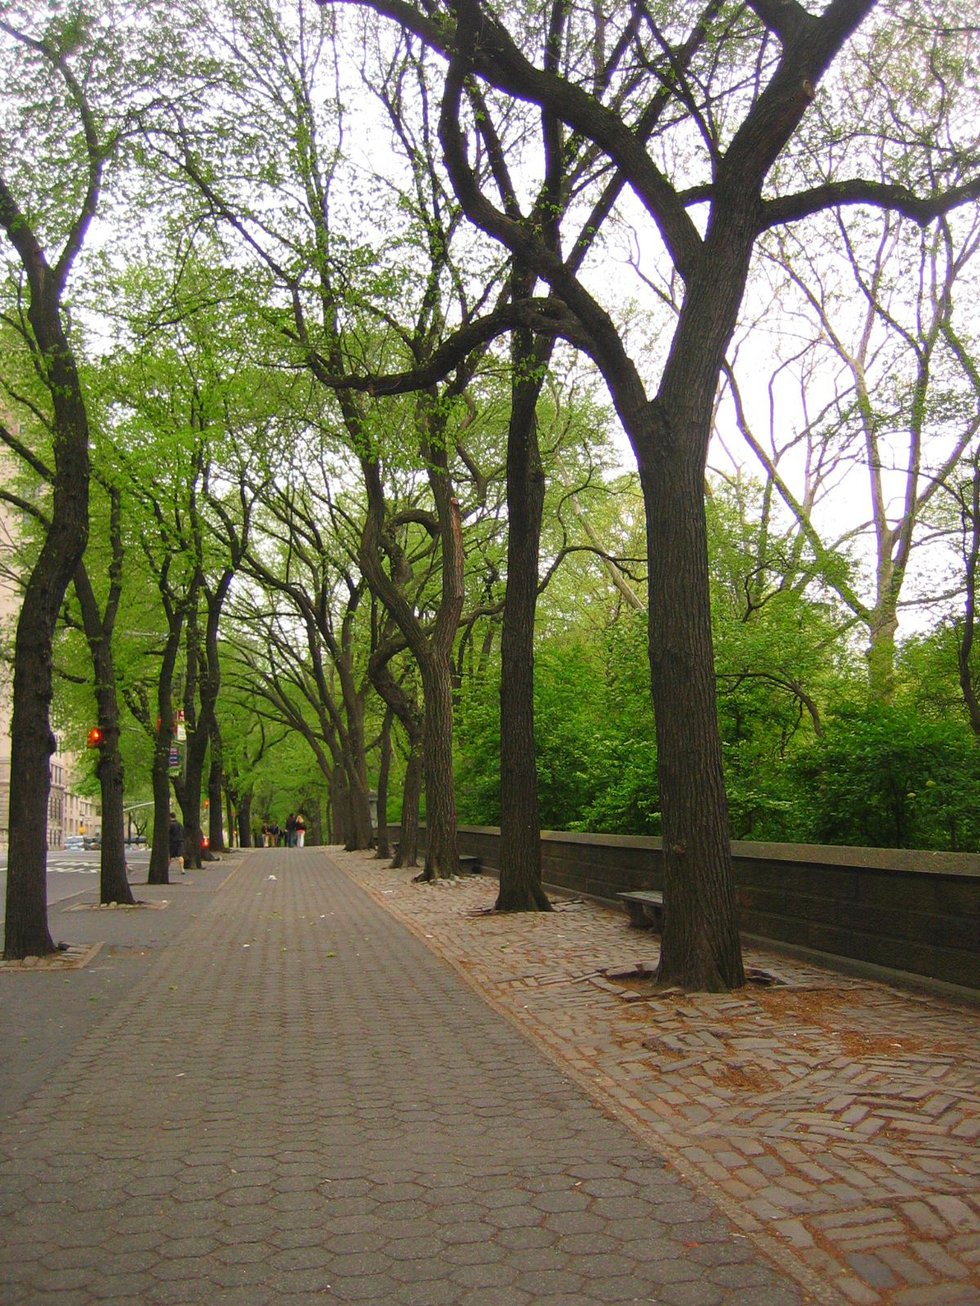 Central Park along Fifth Avenue